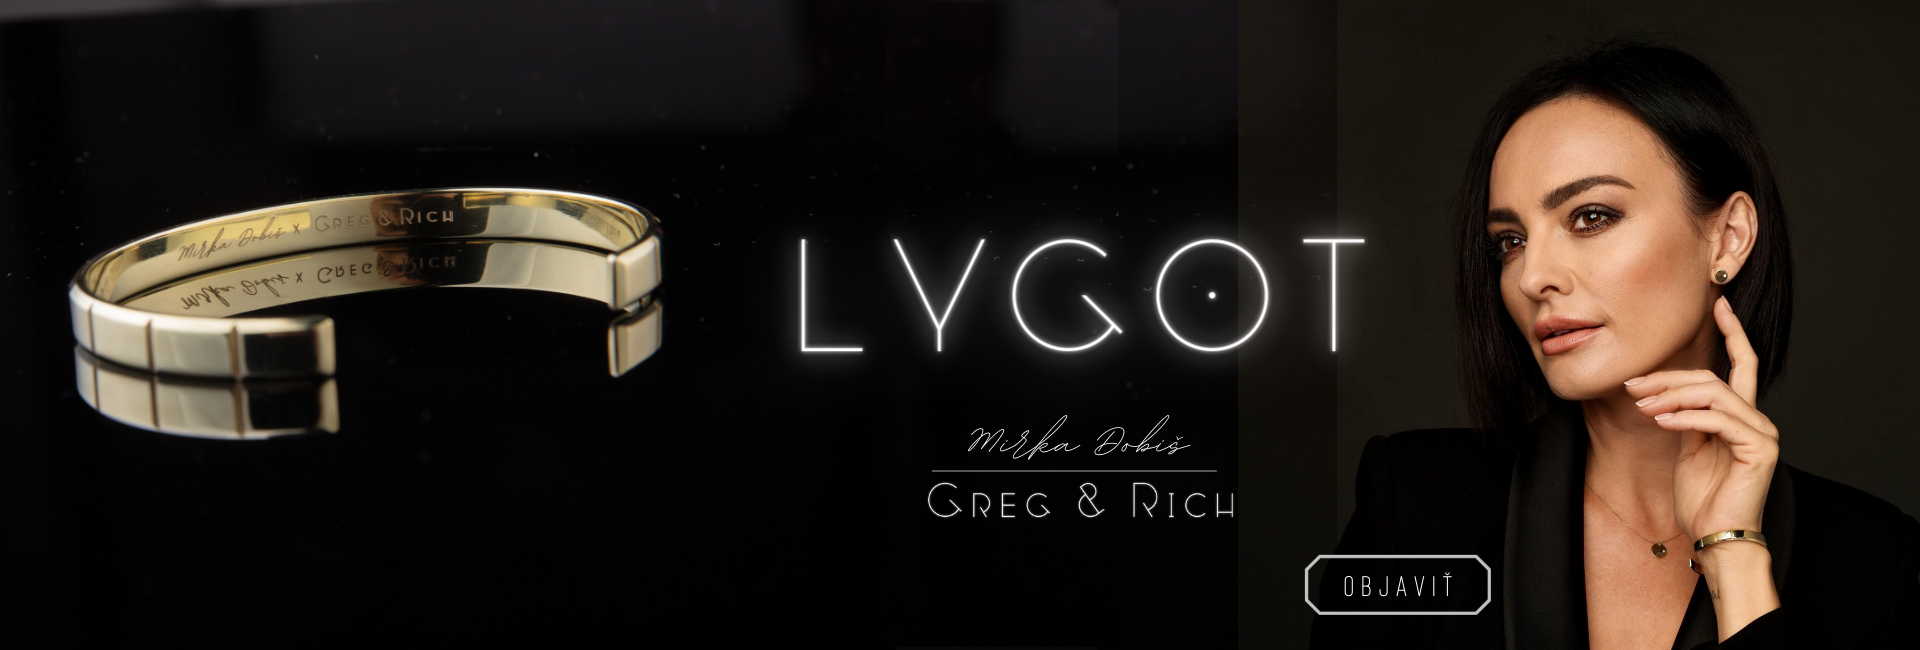 LYGOT - slide 1